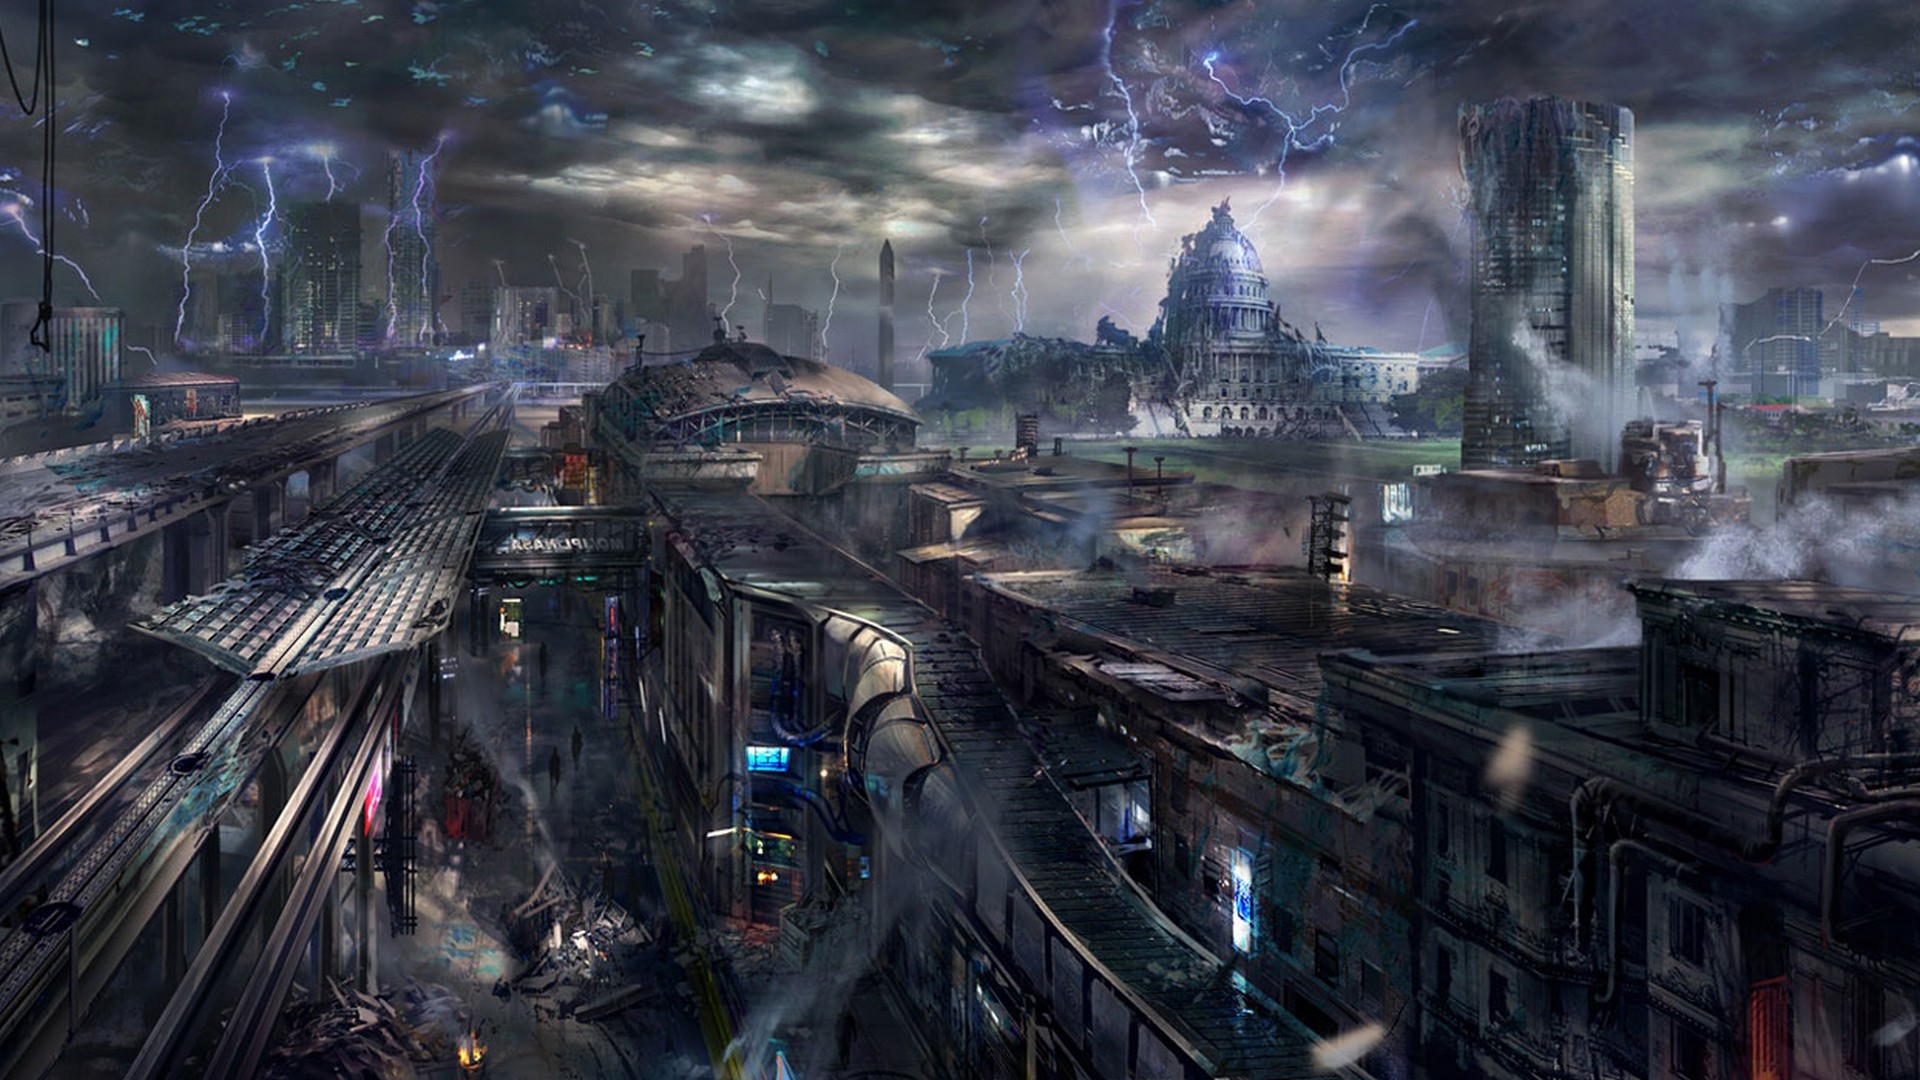 Futuristic, smoke, destruction, buildings, science fiction